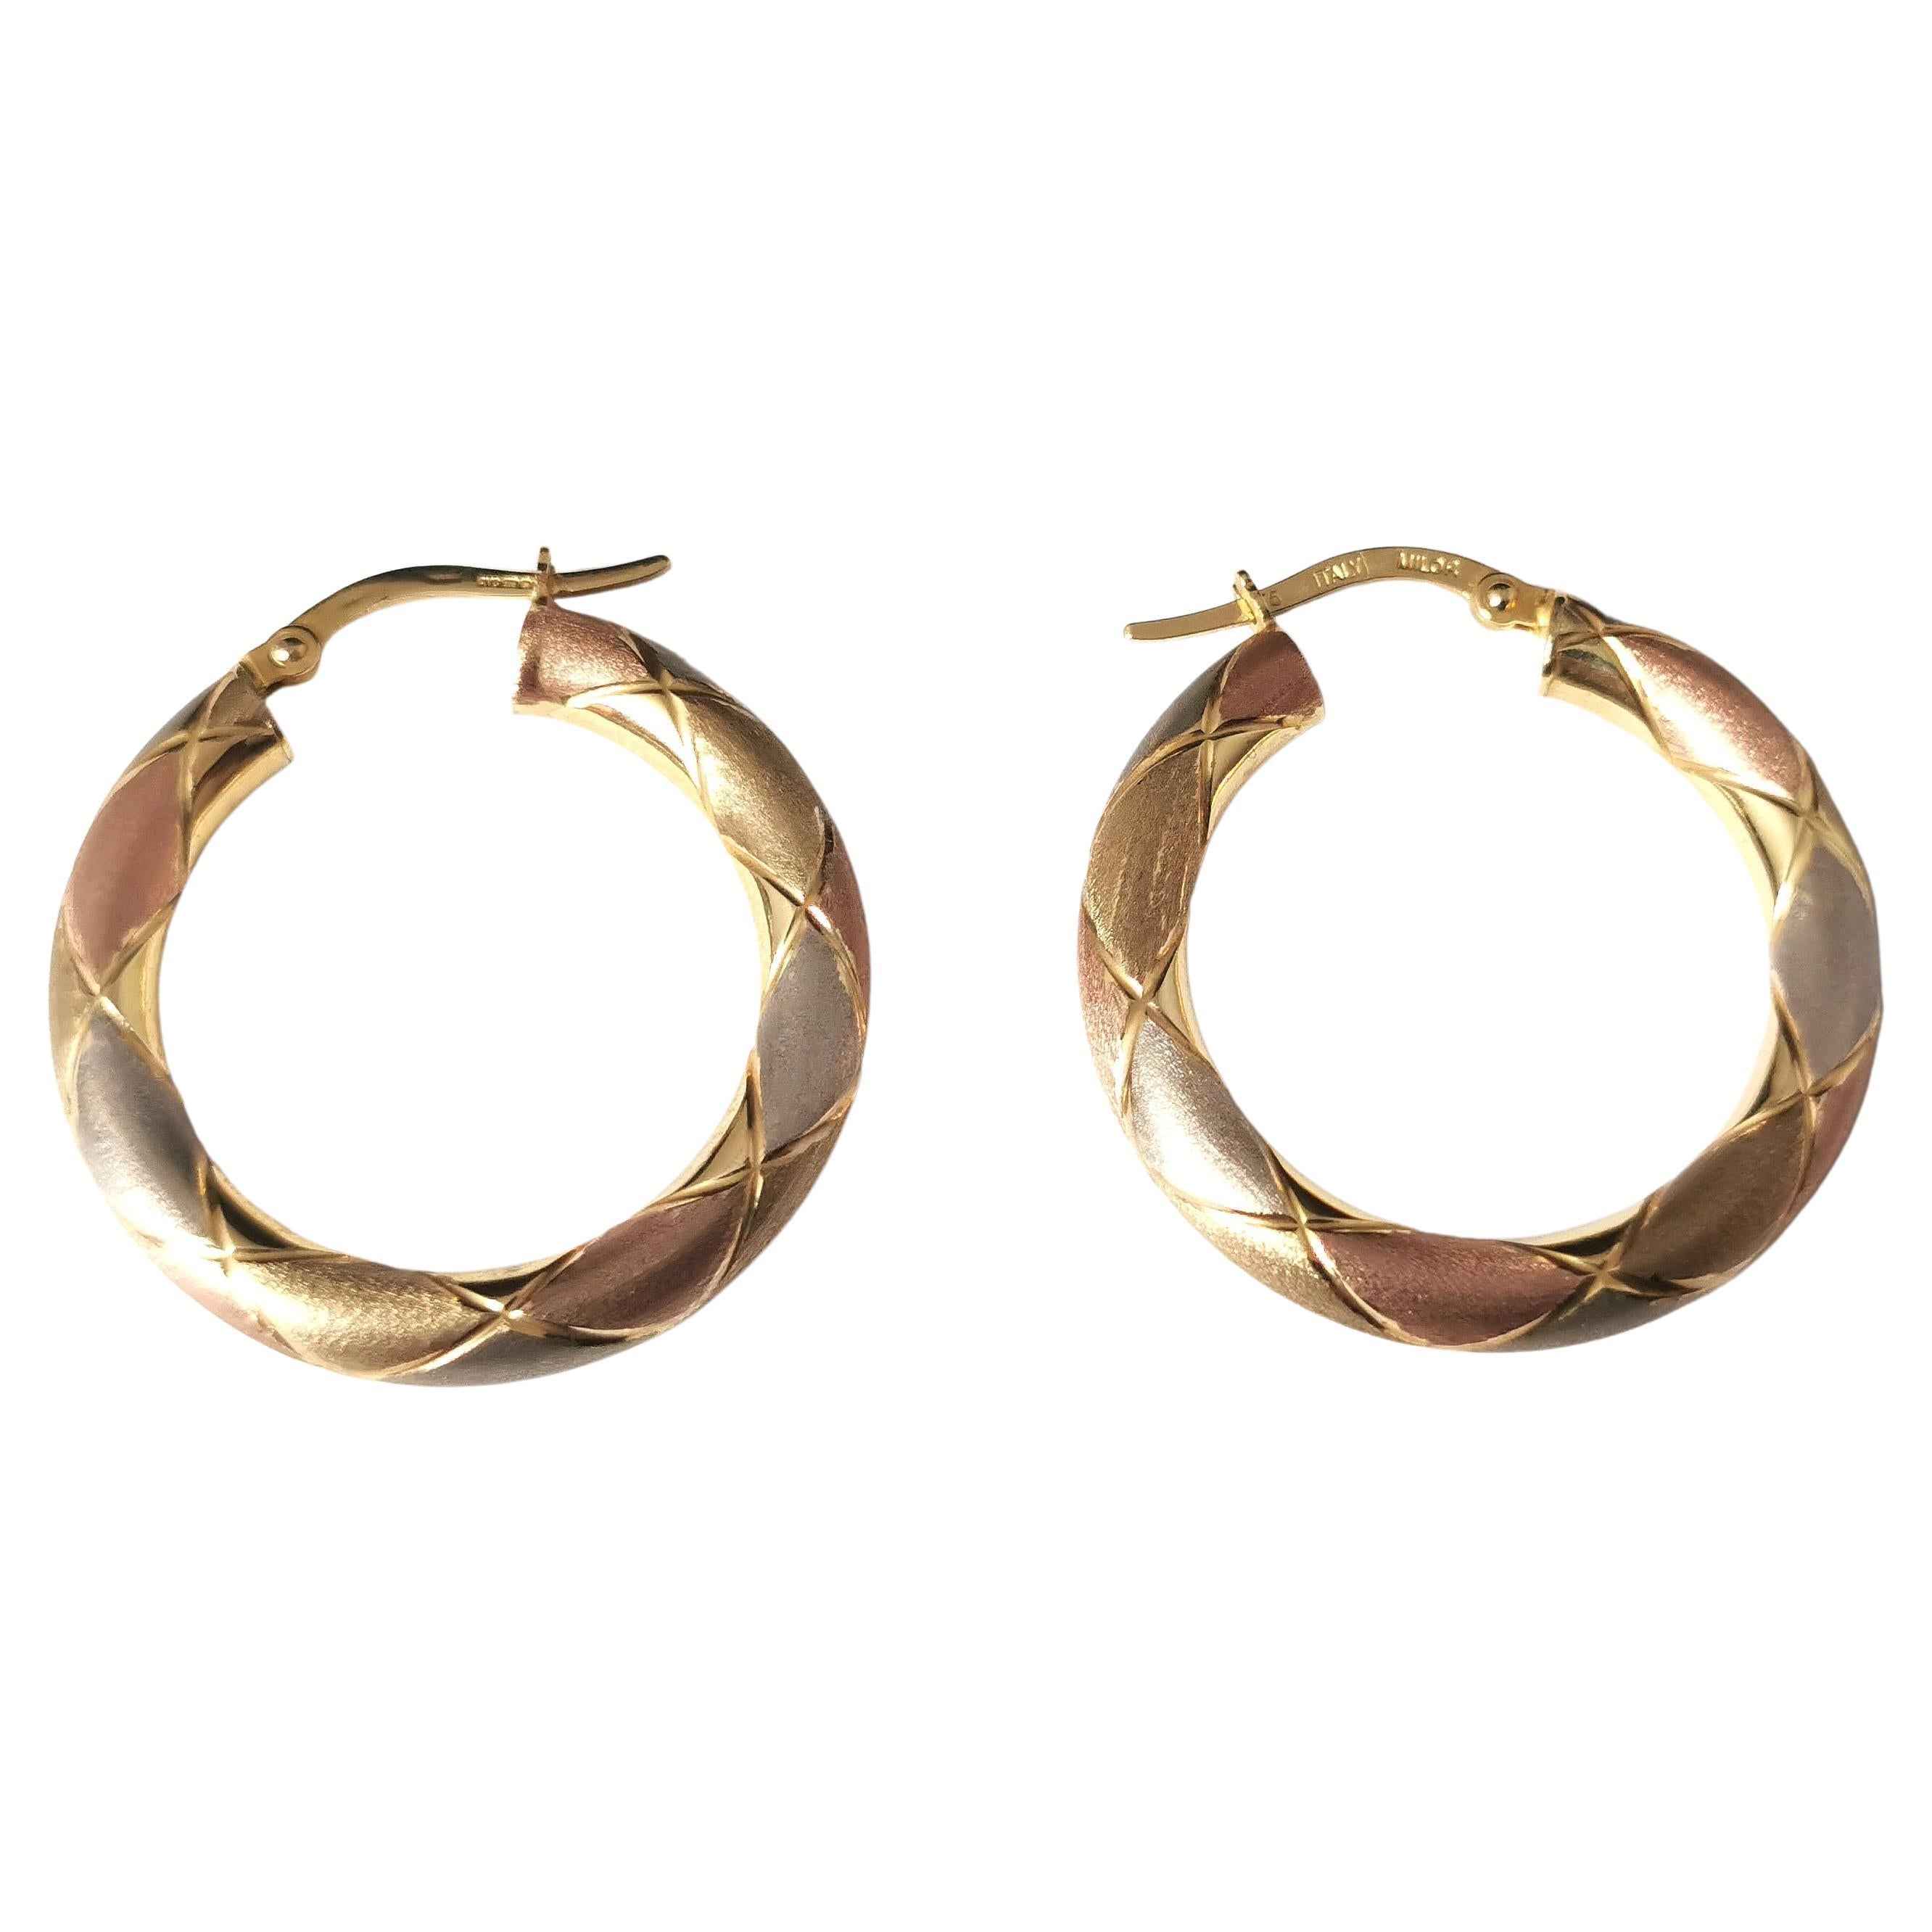 Vintage Tri Colour Gold Hoop Earrings, Italian, Engraved